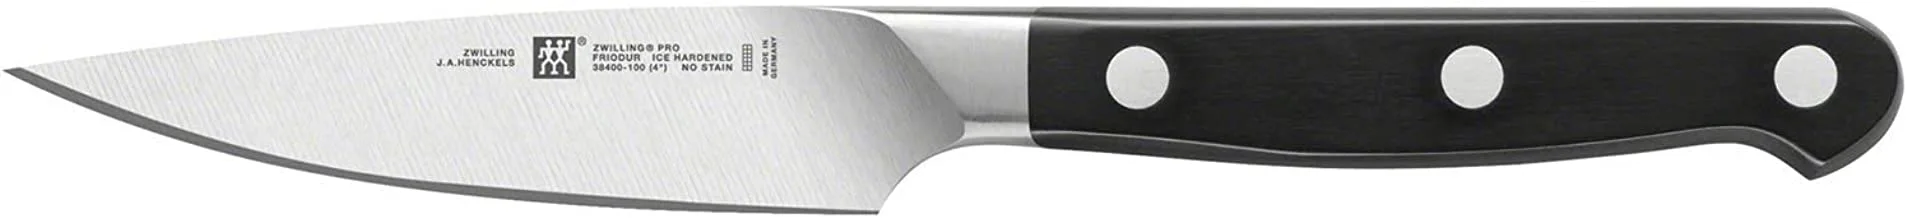 سكين التقشير Zwilling Kitchen Pro ، أسود / فضي ، 10 سم ، ZG-38400-101